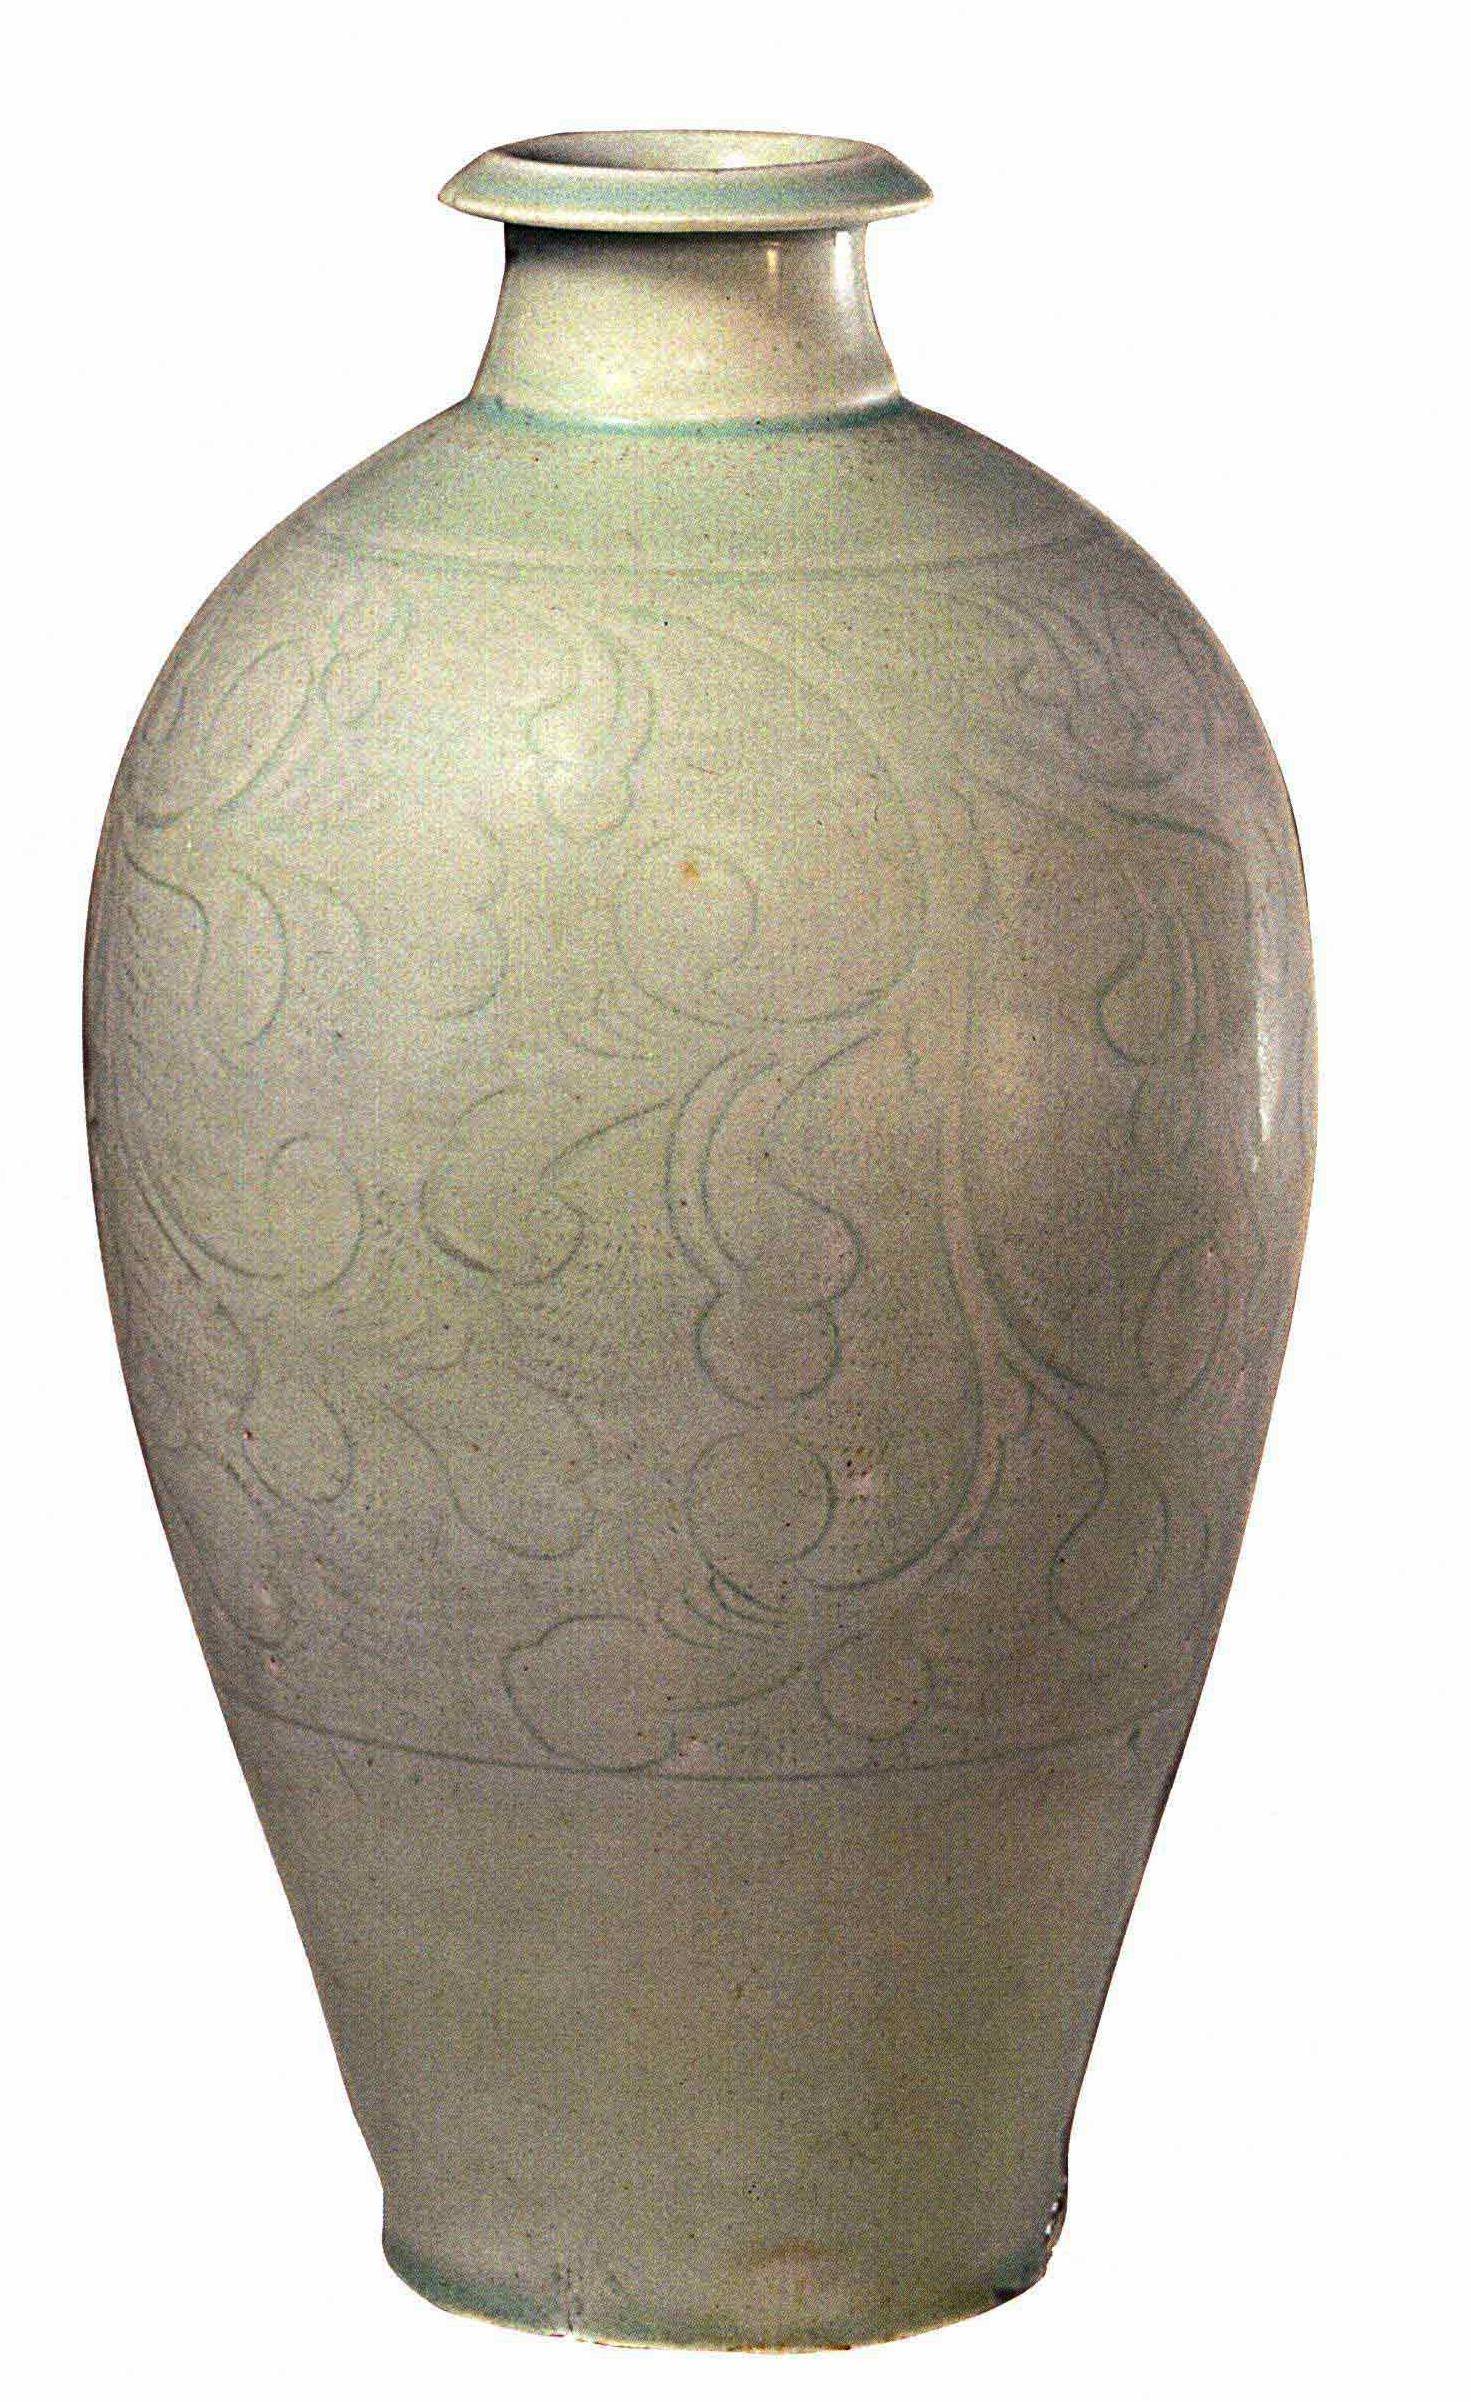 中国陶瓷文化,宋代龙泉窑青瓷中的名品,难得一见的高水平佳作